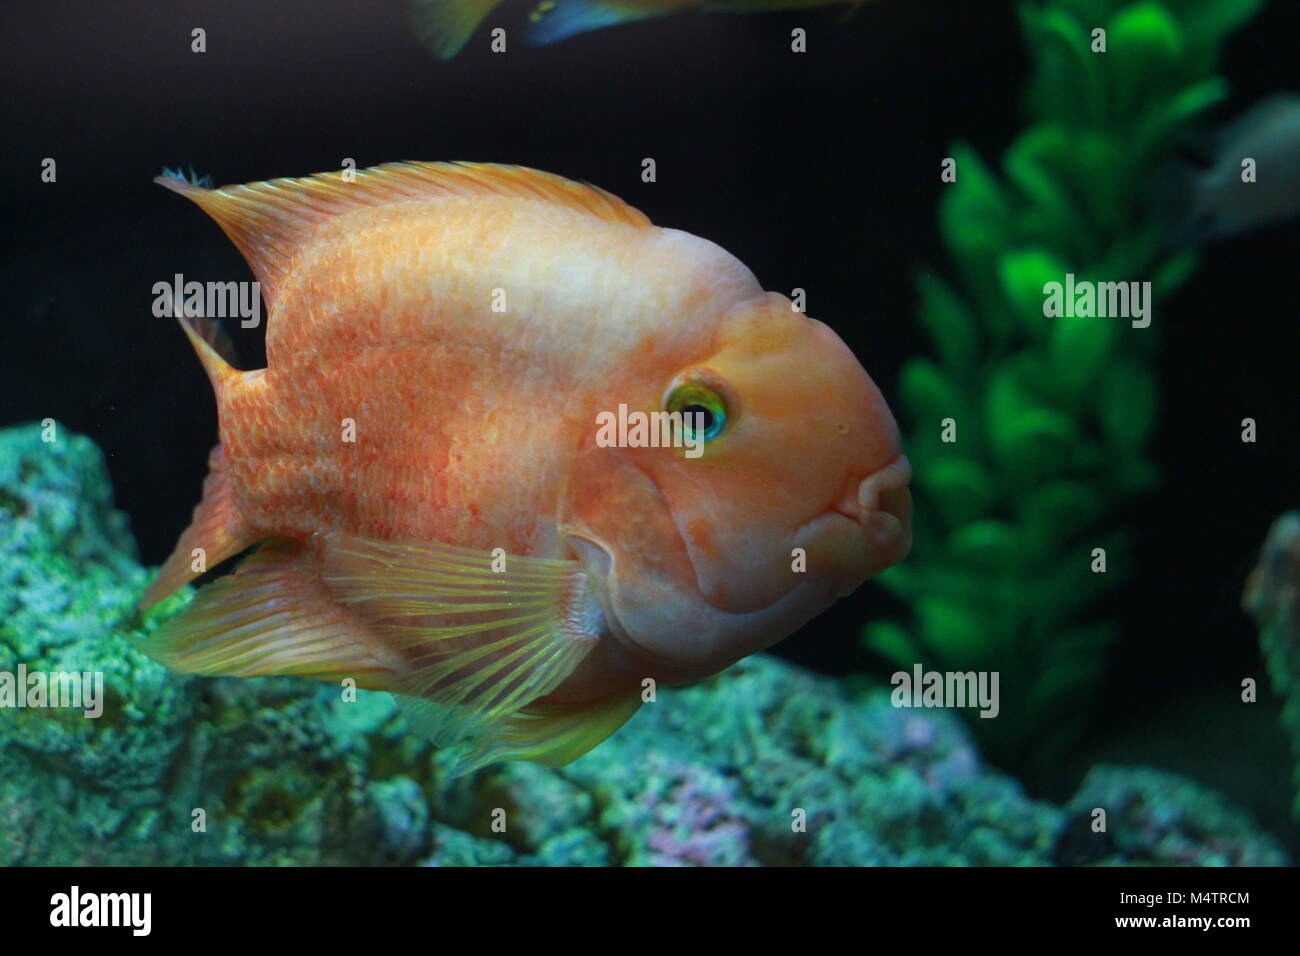 Blood parrot cichlid fish in aquarium Stock Photo